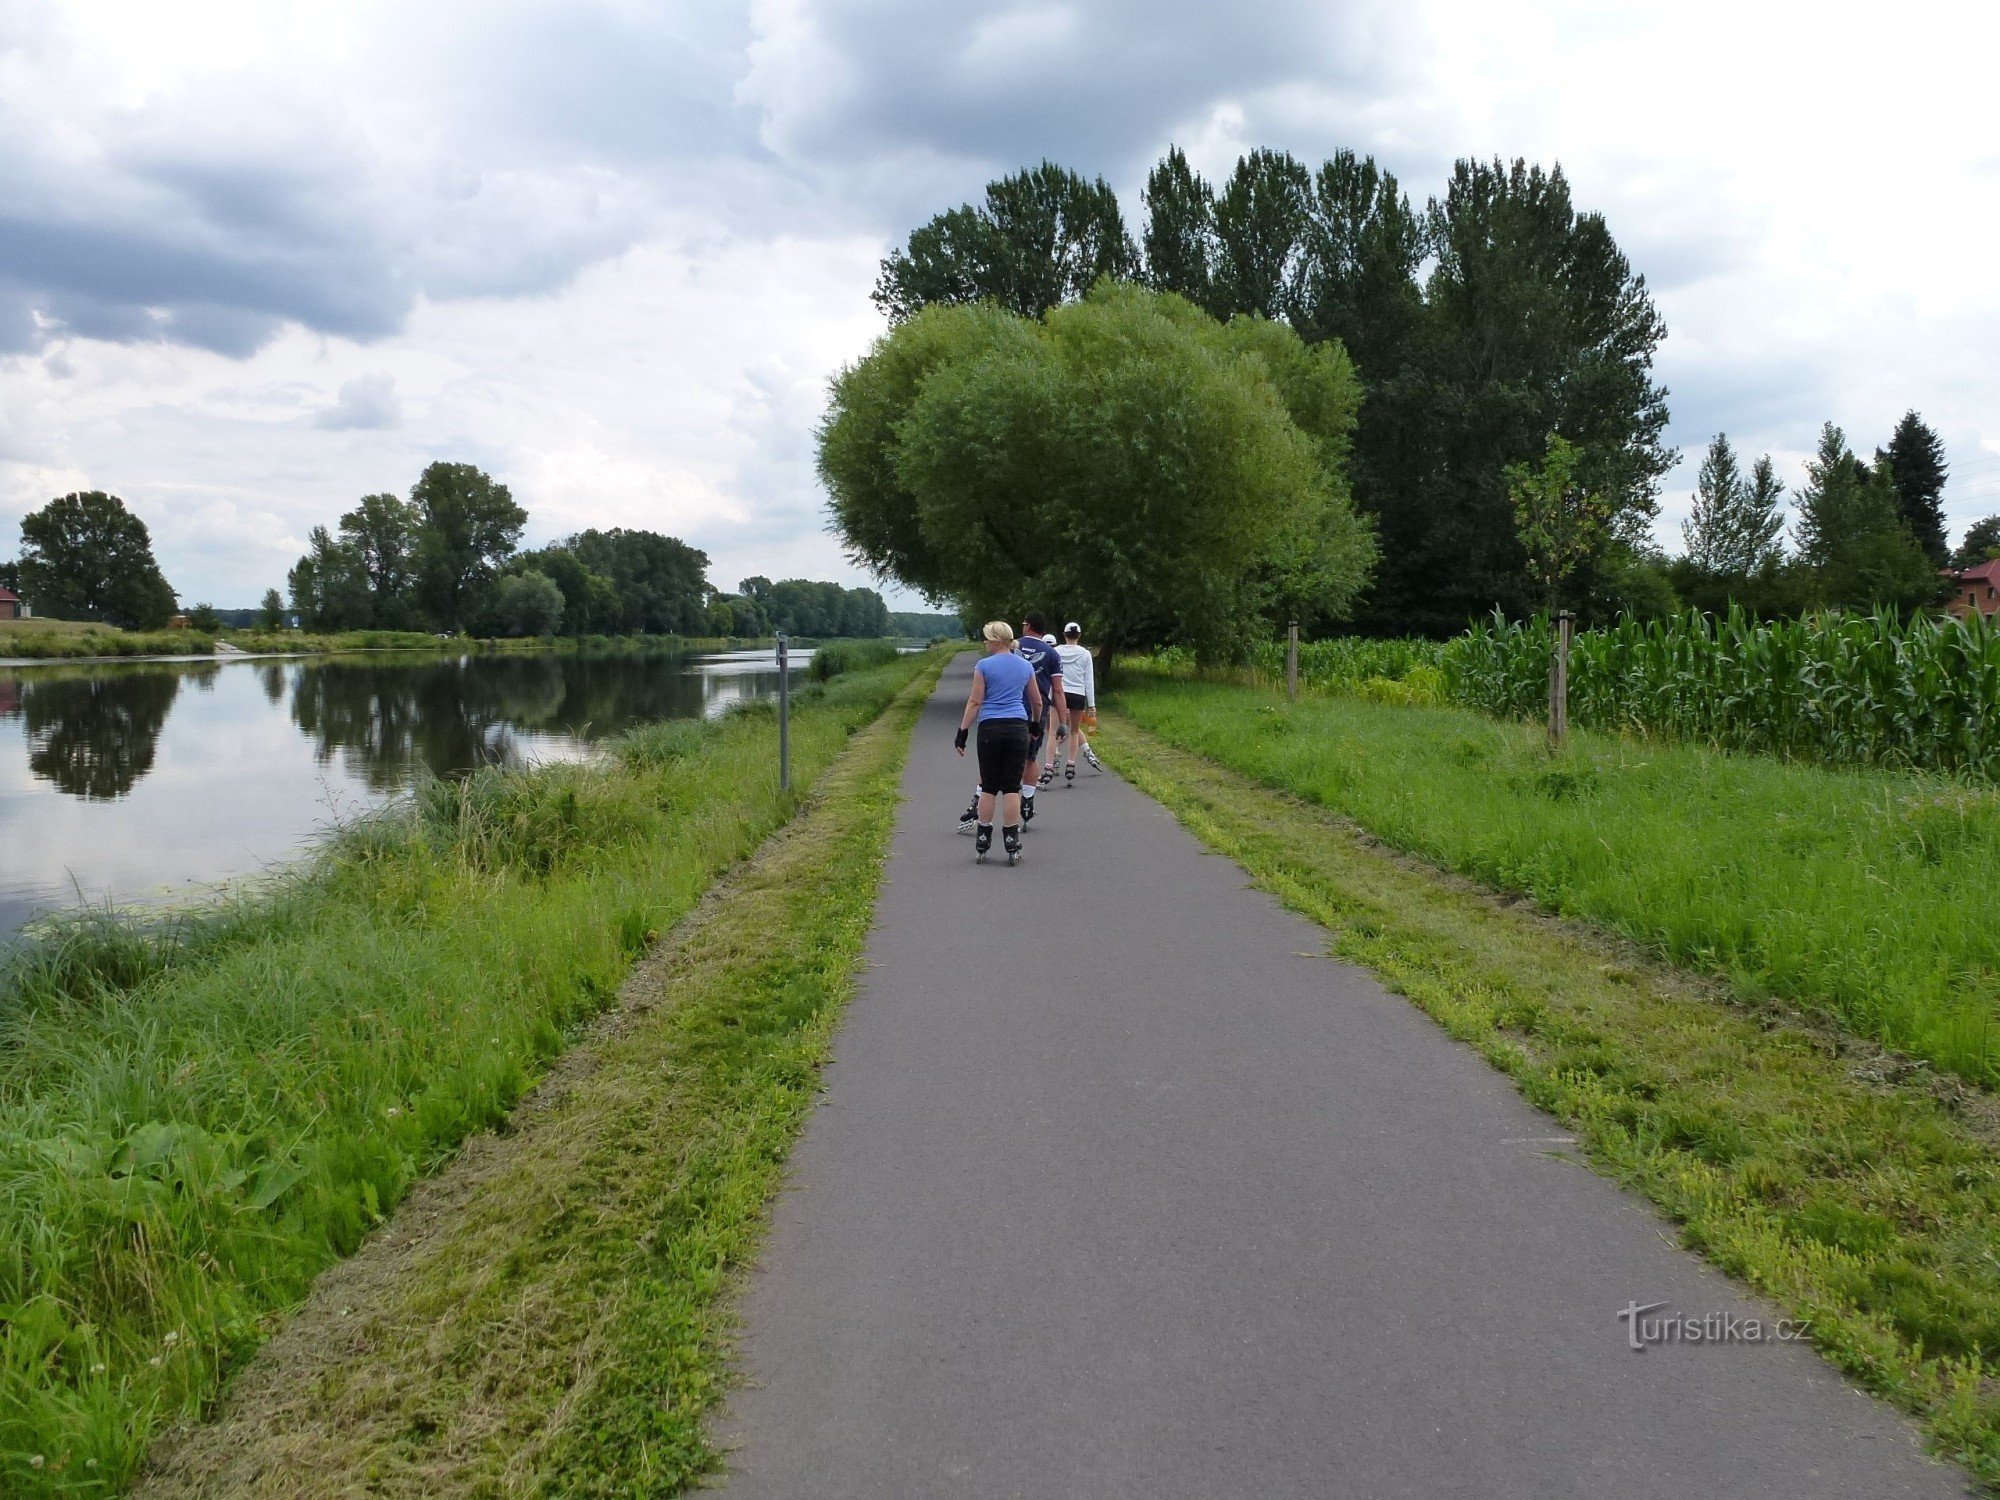 Thiên đường của những người trượt ván gần sông Elbe trên con đường đạp xe 0019